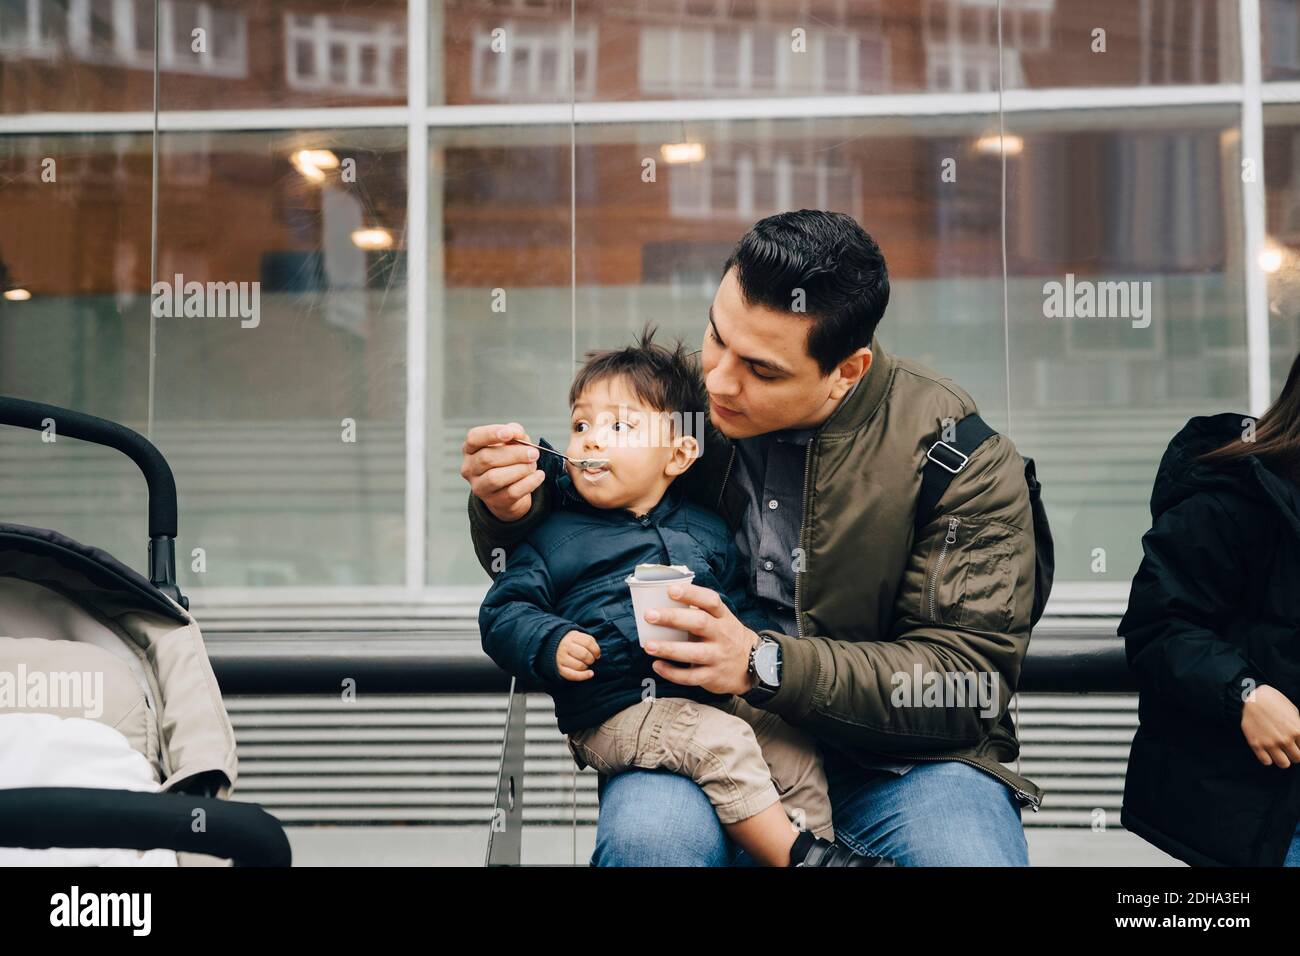 Père nourrissant bébé à son fils pendant qu'il est assis dans le bus arrêt en ville Banque D'Images